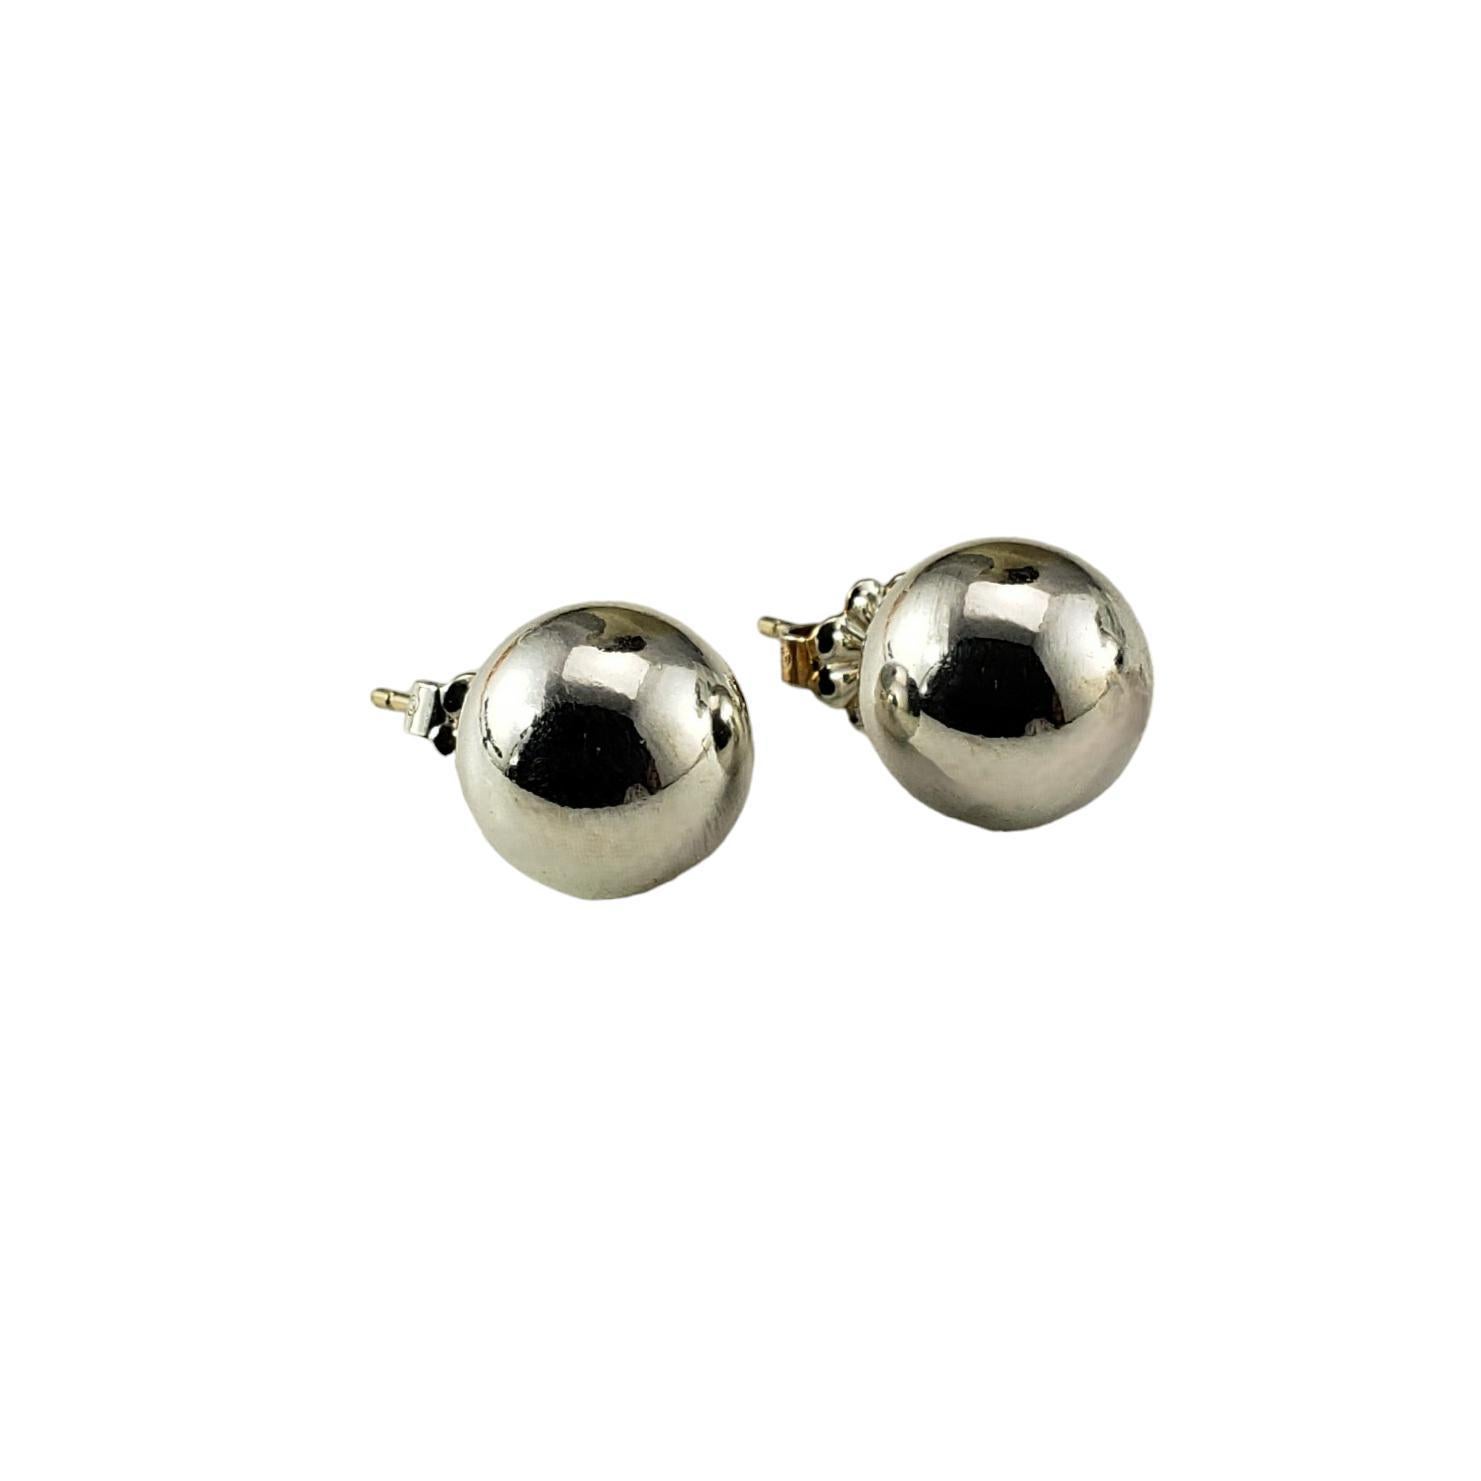 tiffany silver ball earrings 10mm